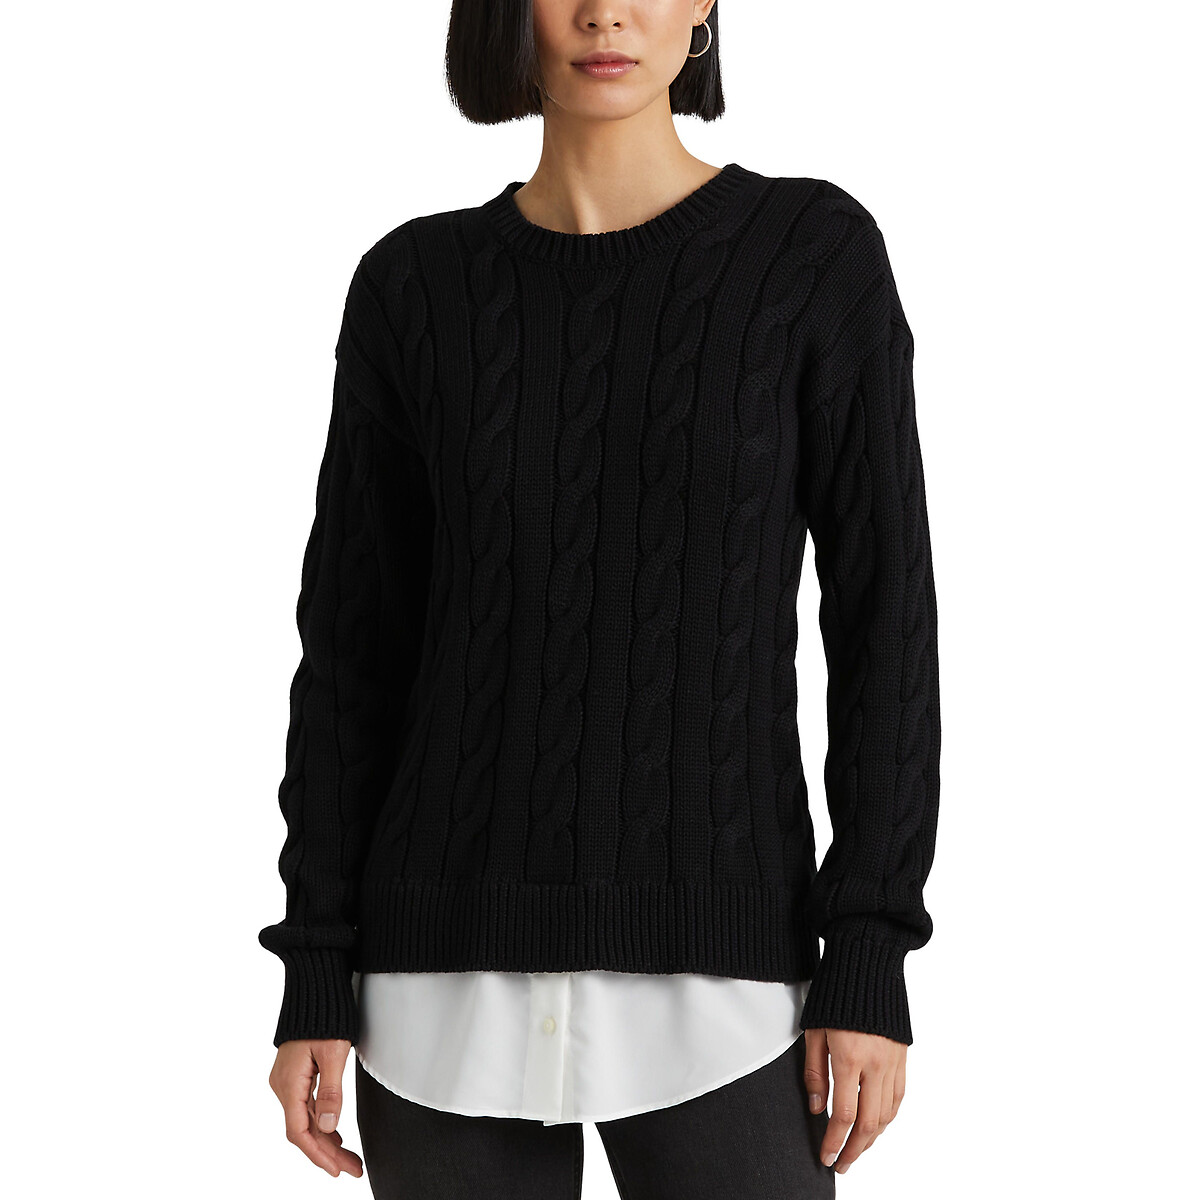 Пуловер с круглым вырезом из плетеного трикотажа S черный пуловер с круглым вырезом из трикотажа xs черный